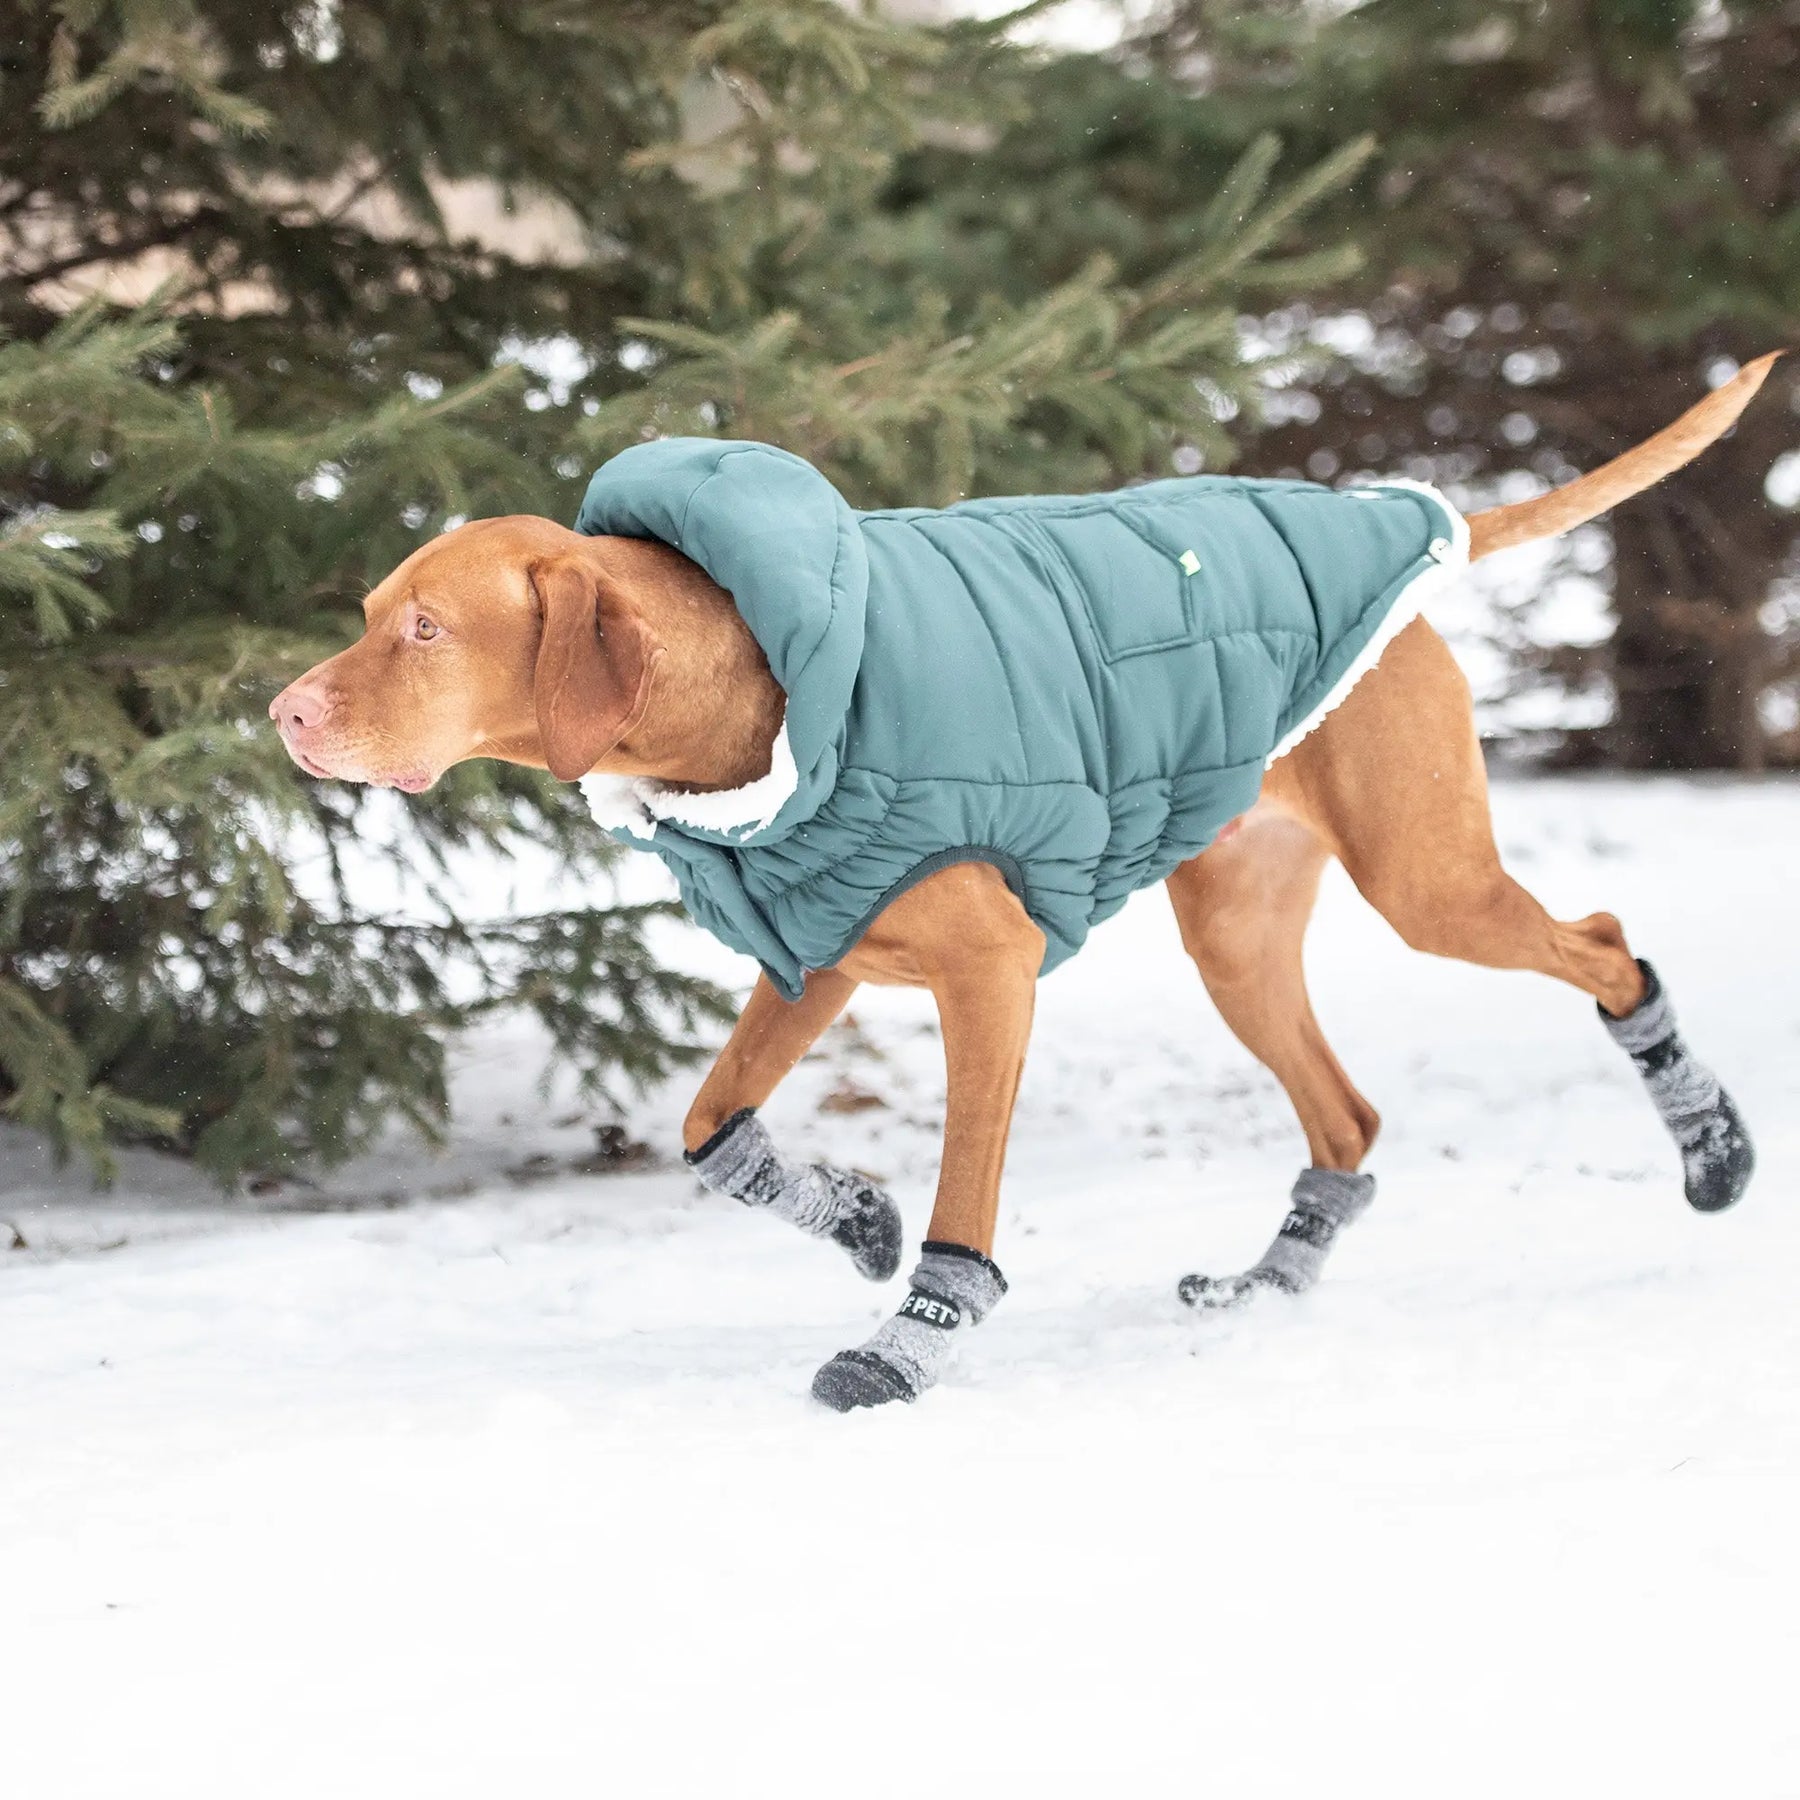 All-Terrain Dog Boots GF PET Footwear GF Pet Official Online Store